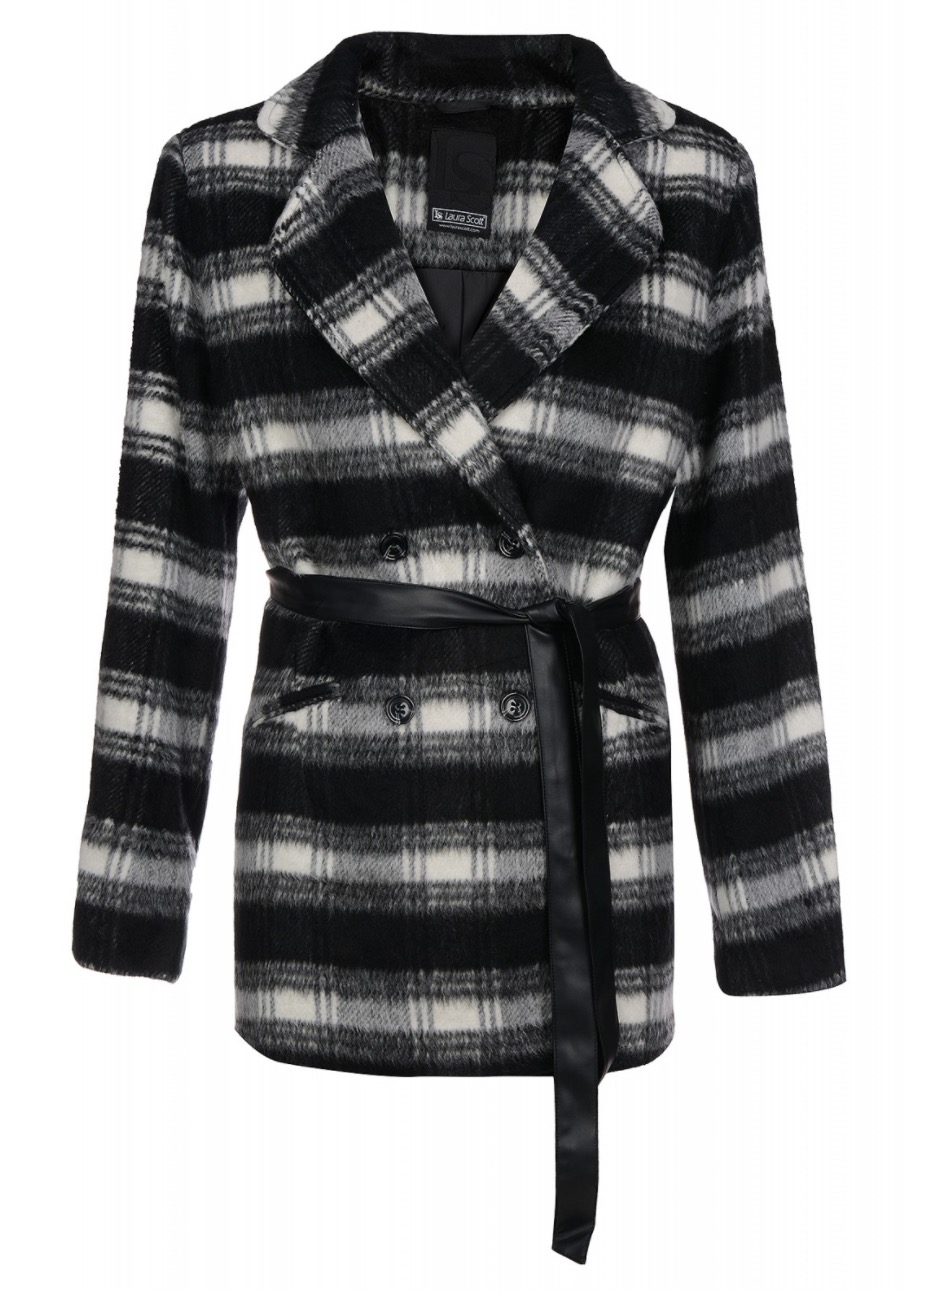 Laura Scott Damen Woll-Jacke für nur 24,99 Euro inkl. Versand